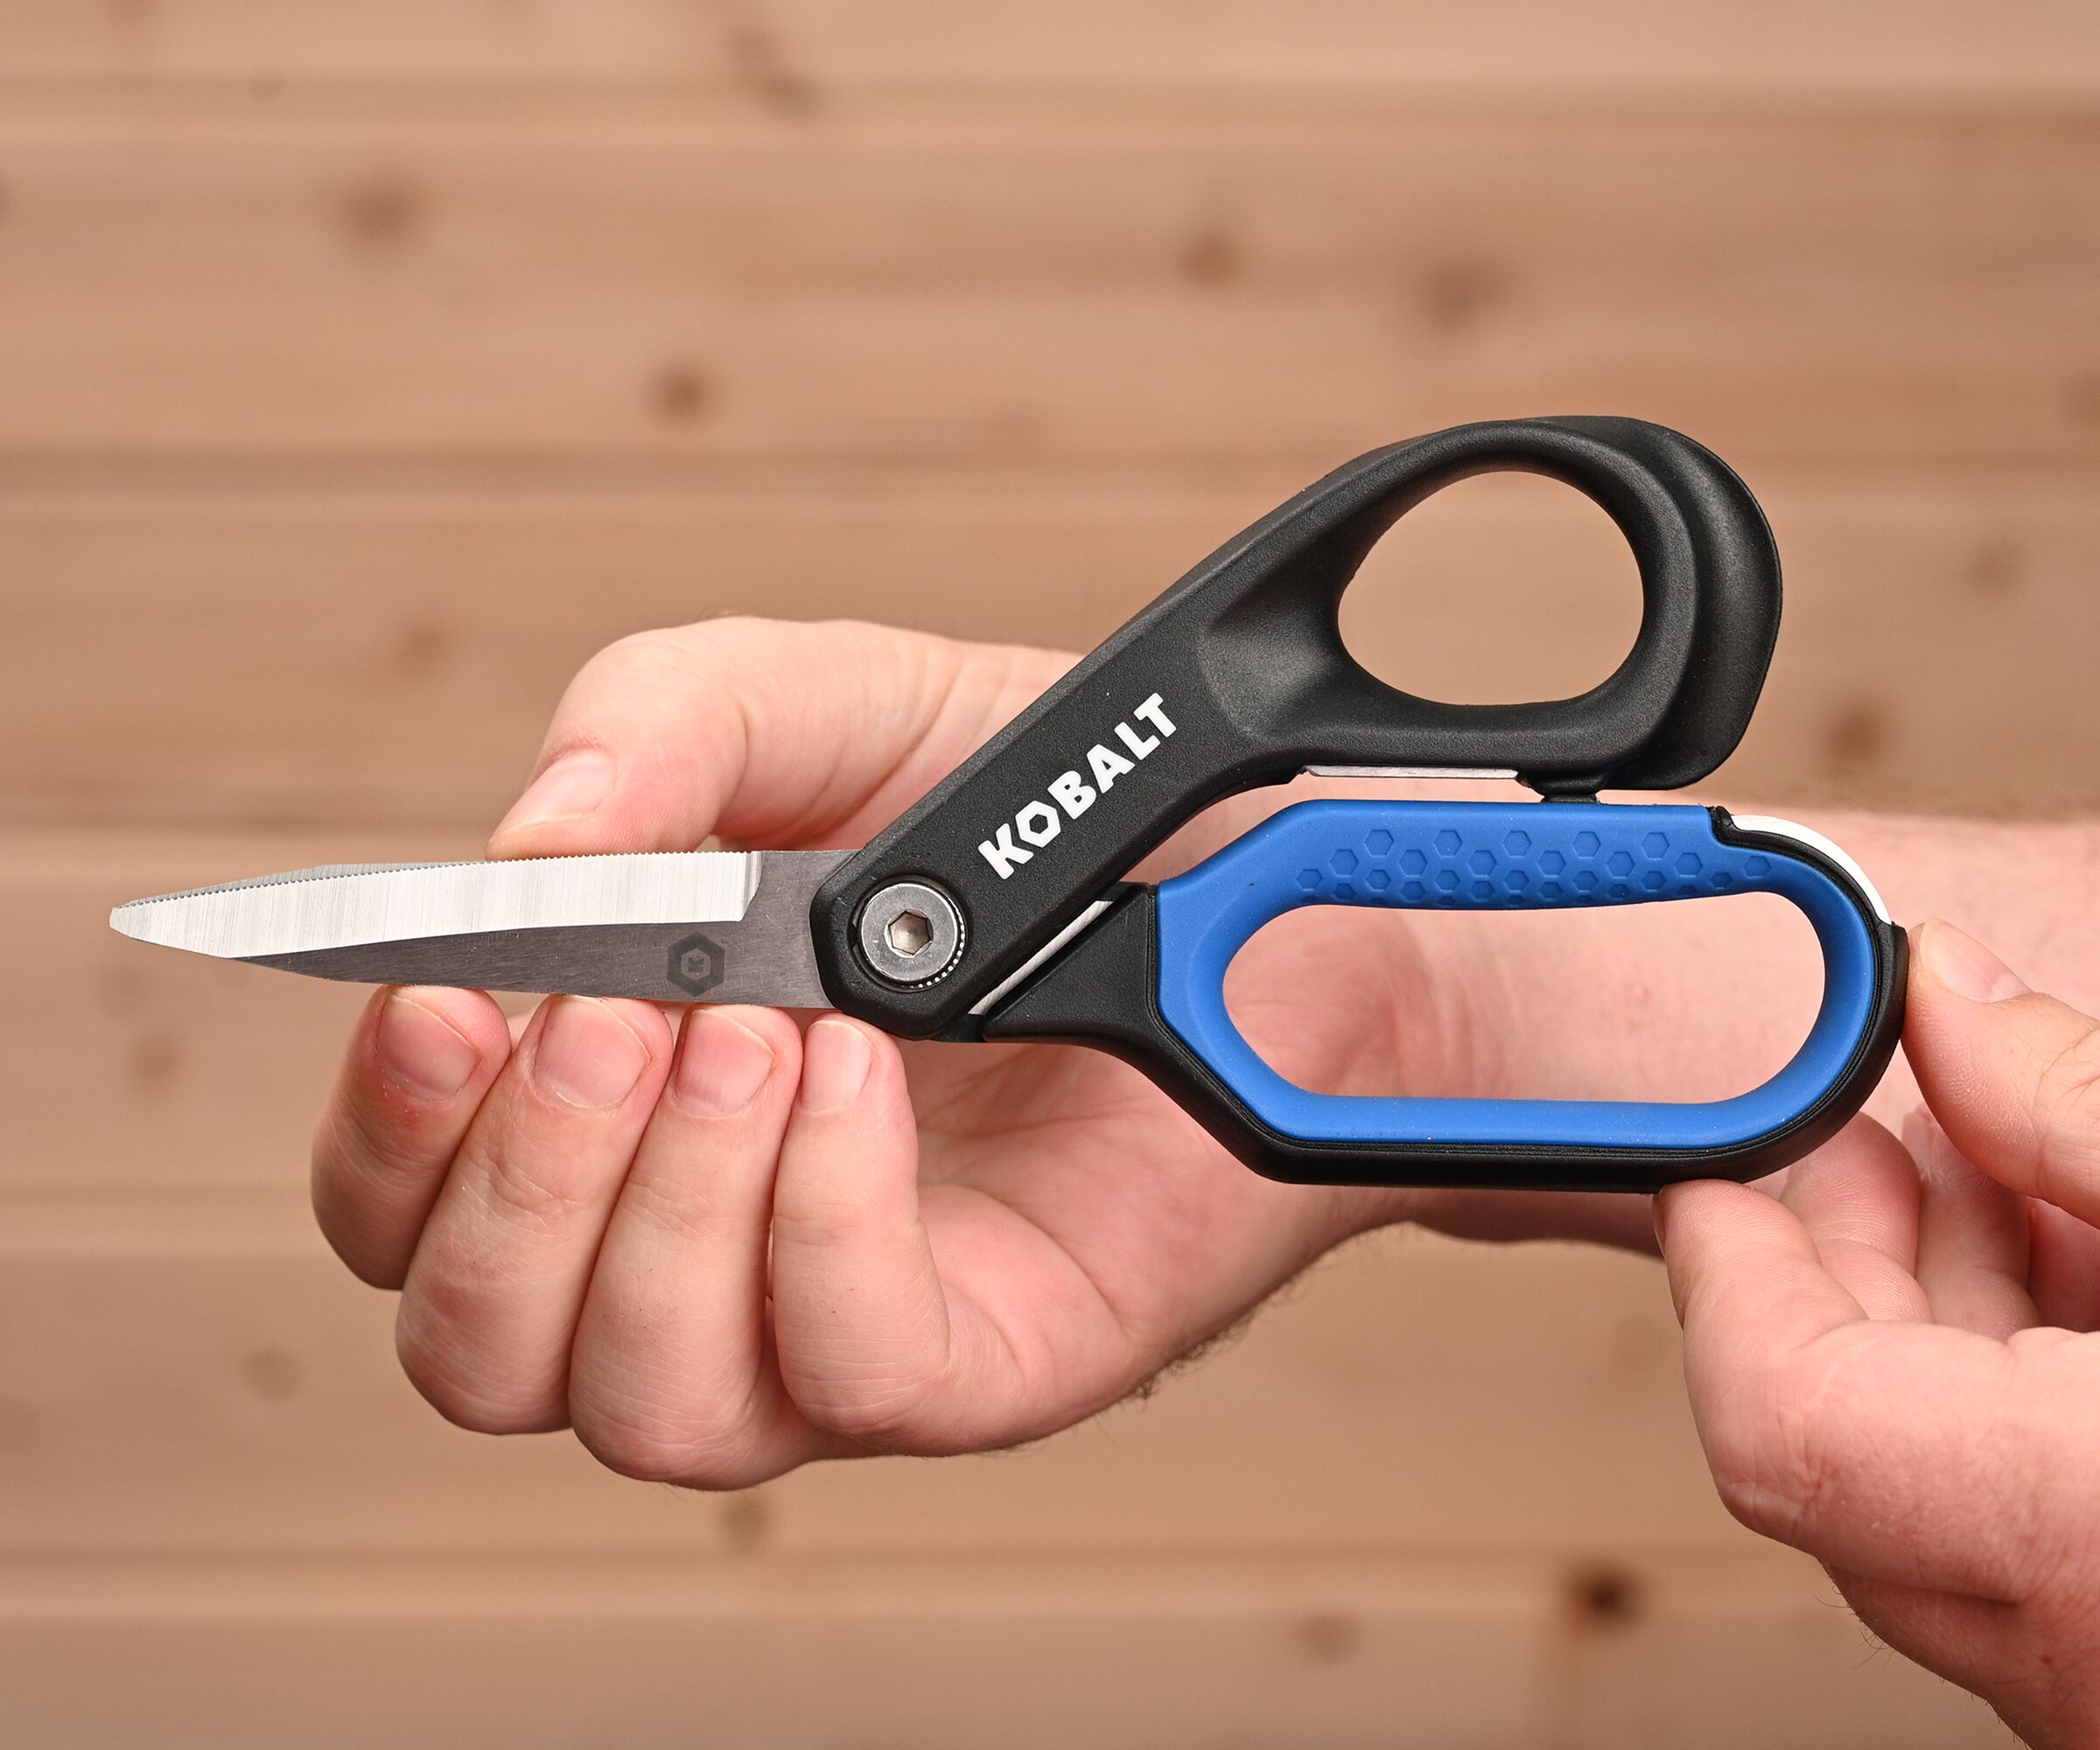 Kobalt Stainless Steel 2 Pc Non-slip Scissors in the Scissors department at